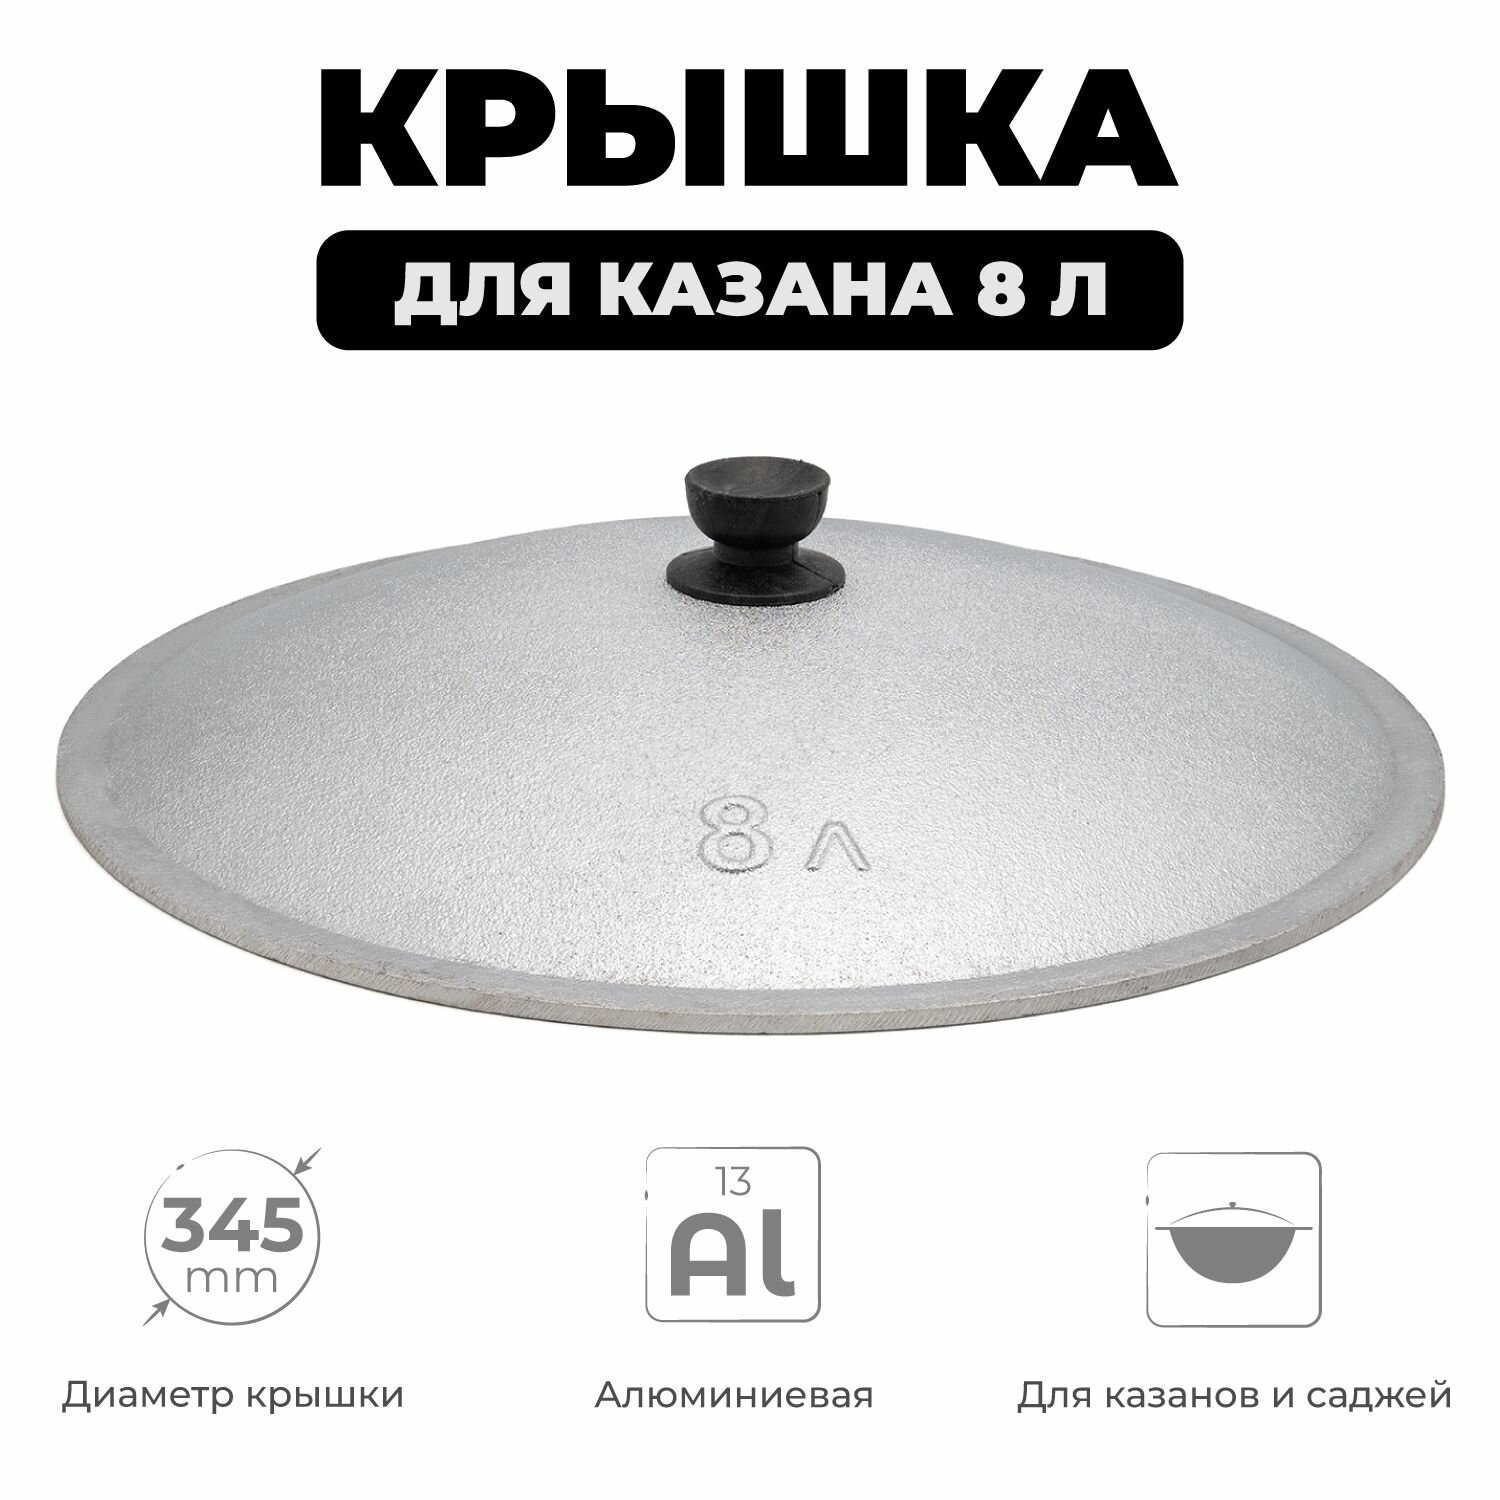 Крышка для казана 8 л алюминиевая, диаметр 34,5 см, крышка для узбекского казана